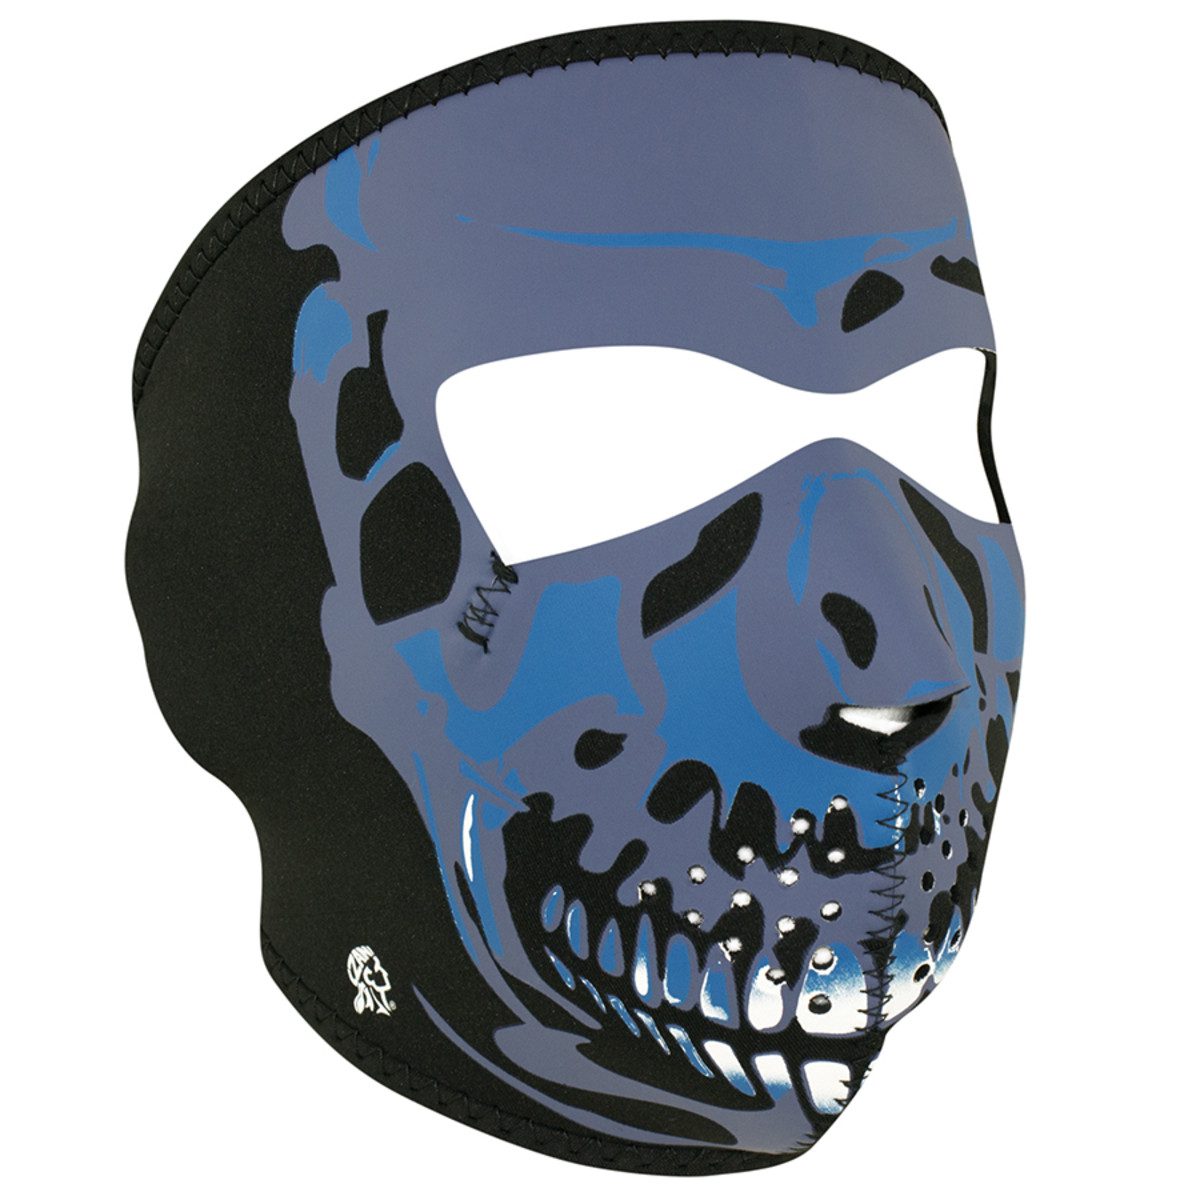 Zan Headgear Neoprene Full Face Mask - Blue Chrome Skull